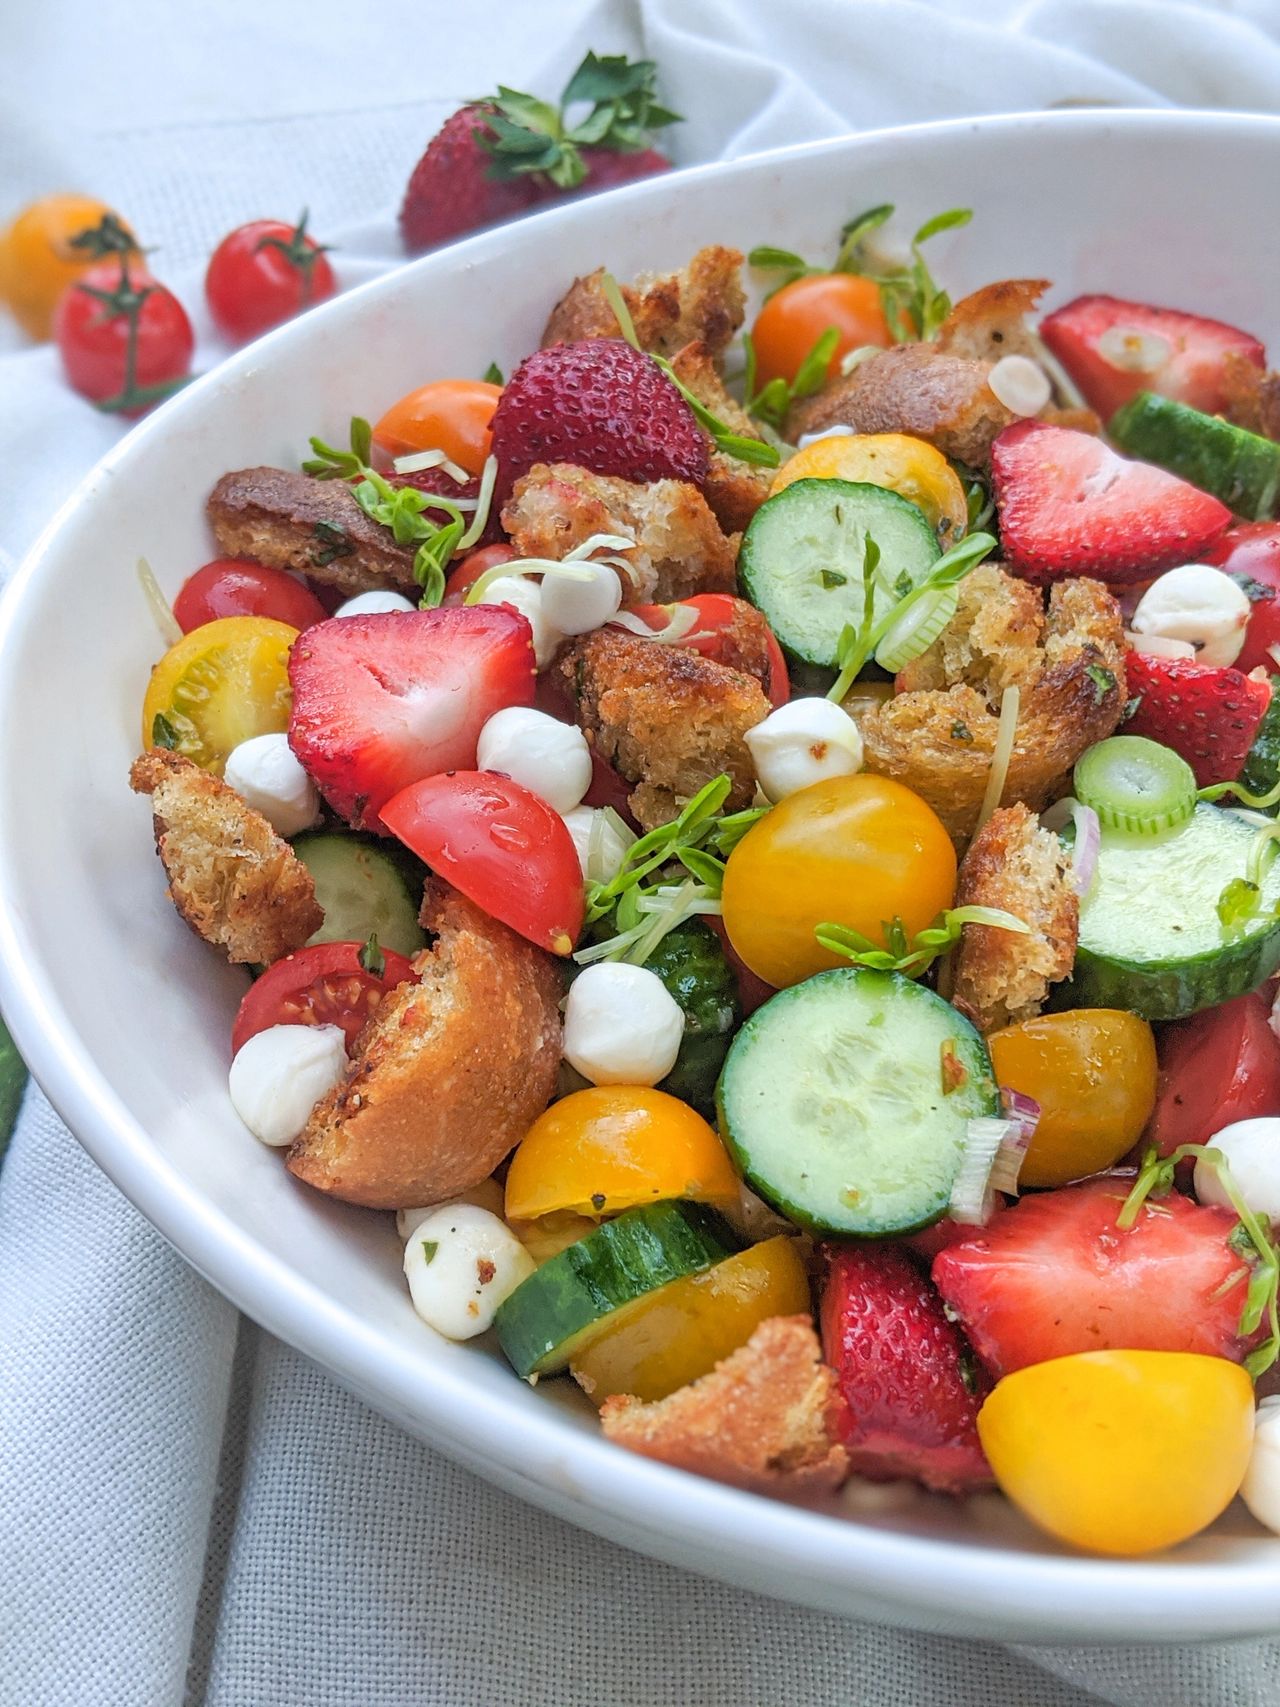 Salade tomates, fraises et feta - Recettes de cuisine Ôdélices